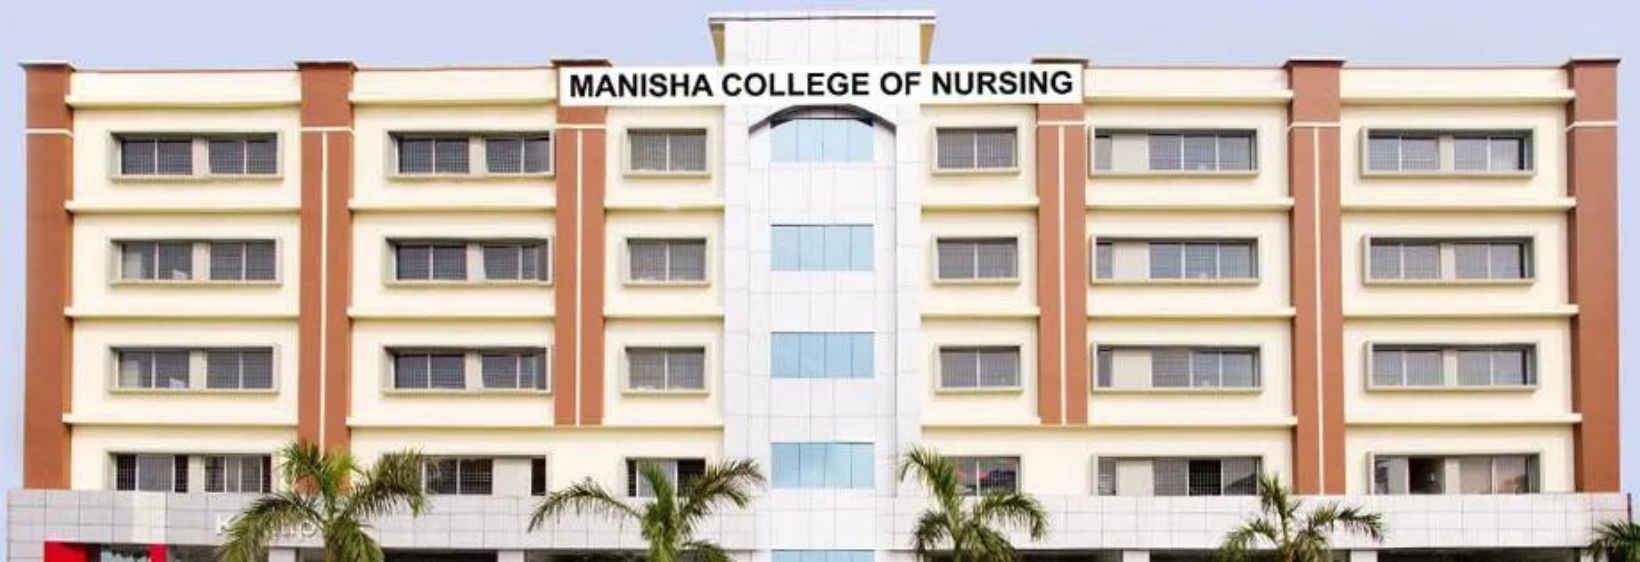 Manisha College of Nursing - Visakhapatnam